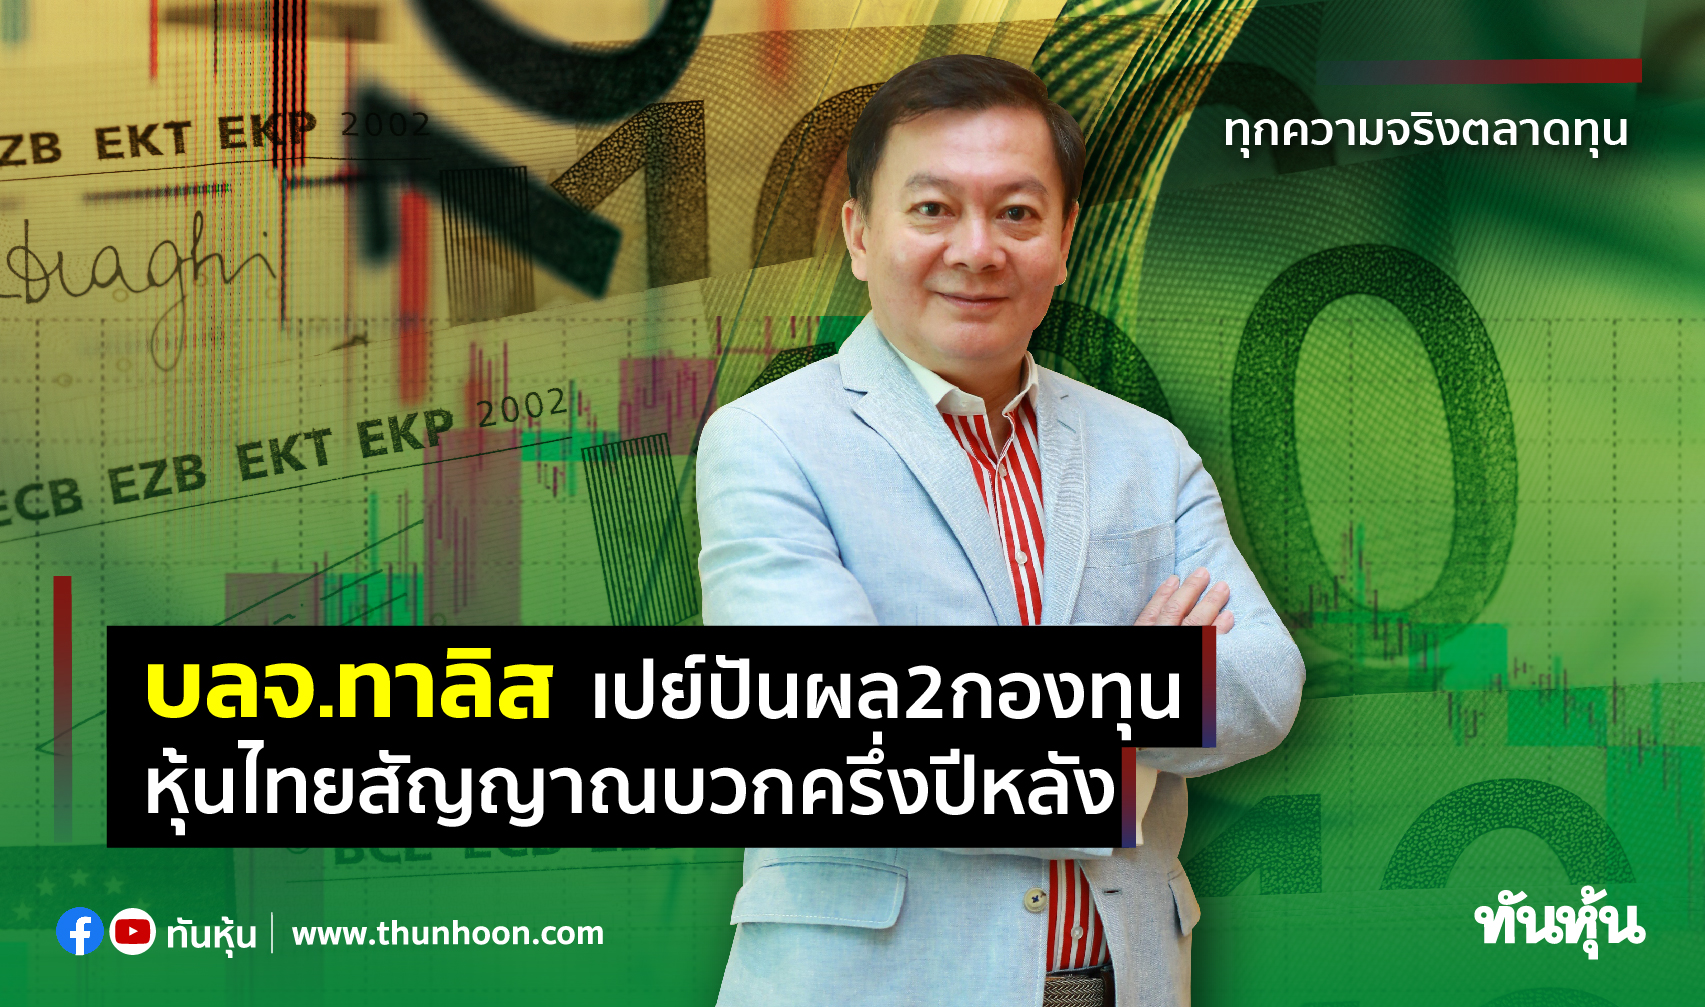 บลจ.ทาลิสเปย์ปันผล 2 กองทุน หุ้นไทยสัญญาณบวกครึ่งปีหลัง